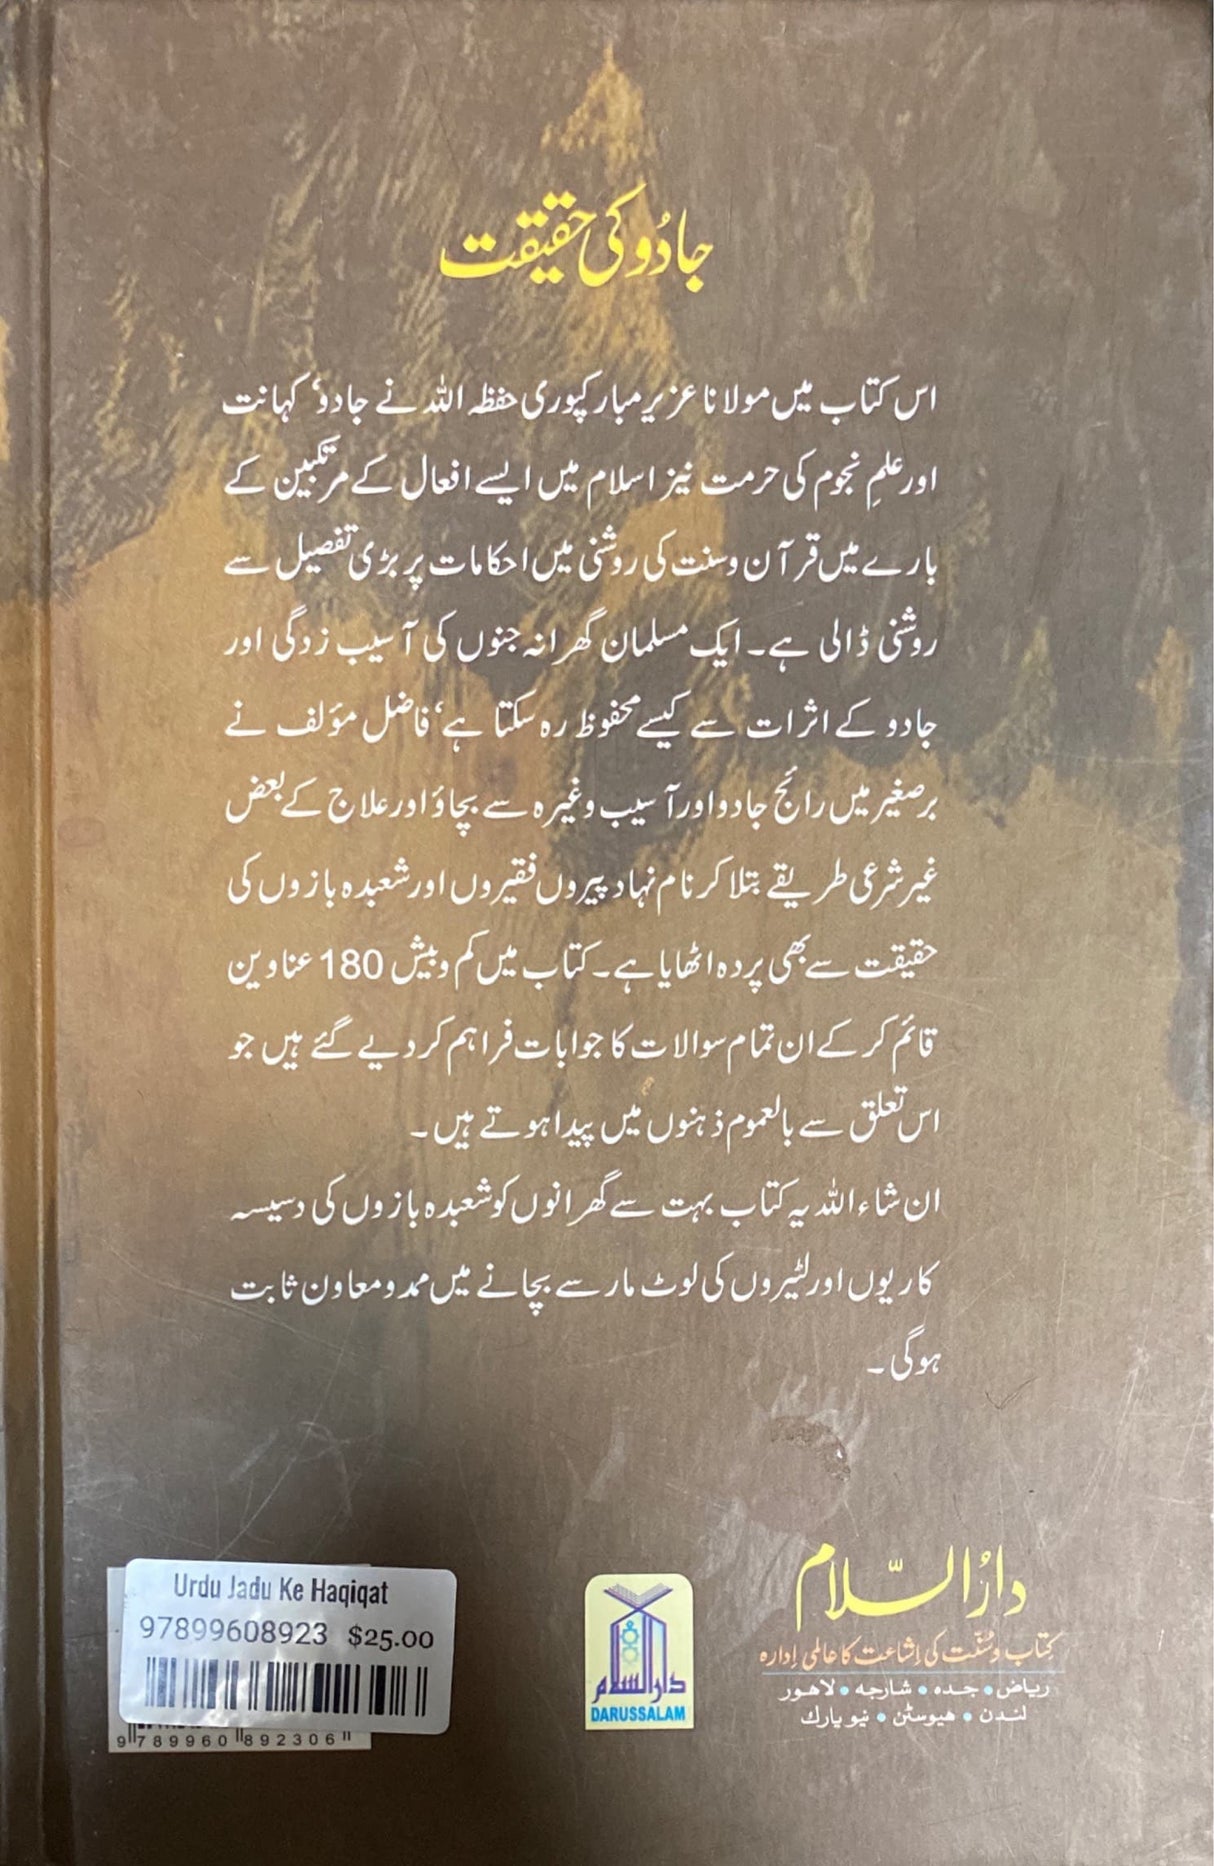 Urdu Jadu Ke Haqiqat